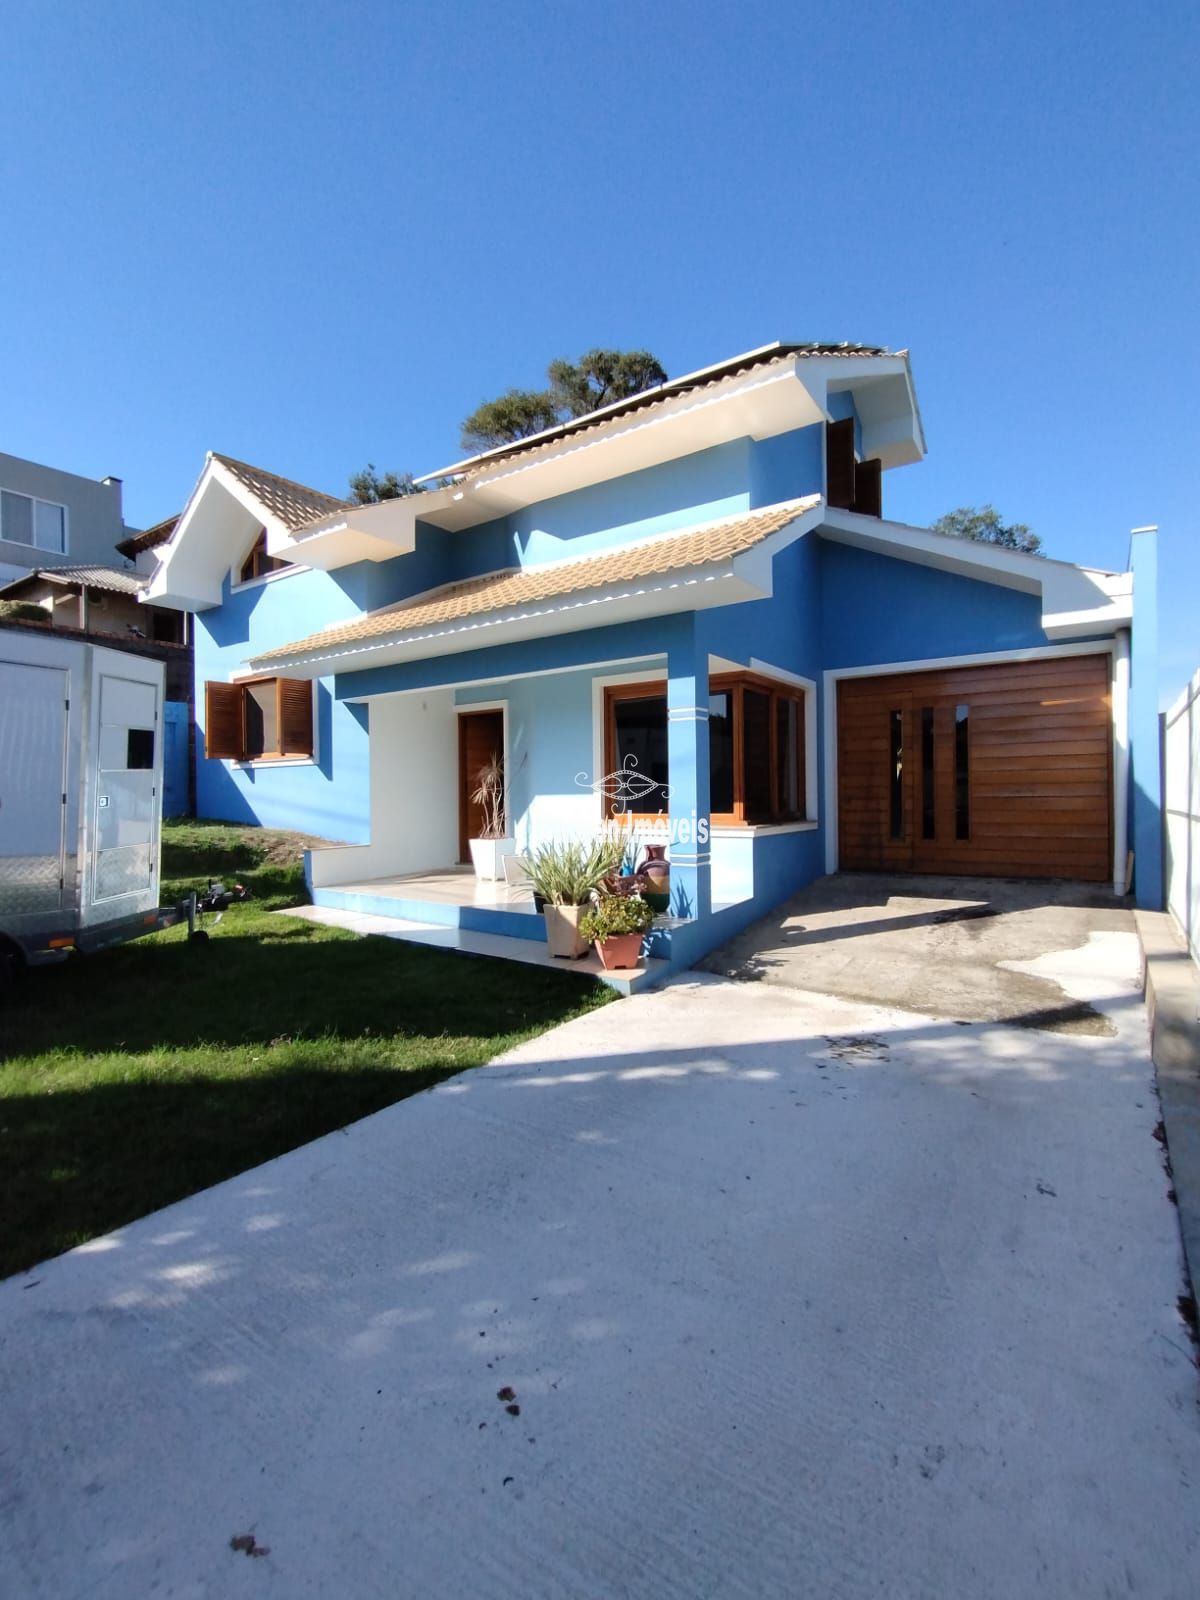 Casa  venda  no Monte Verde - Santa Cruz do Sul, RS. Imveis